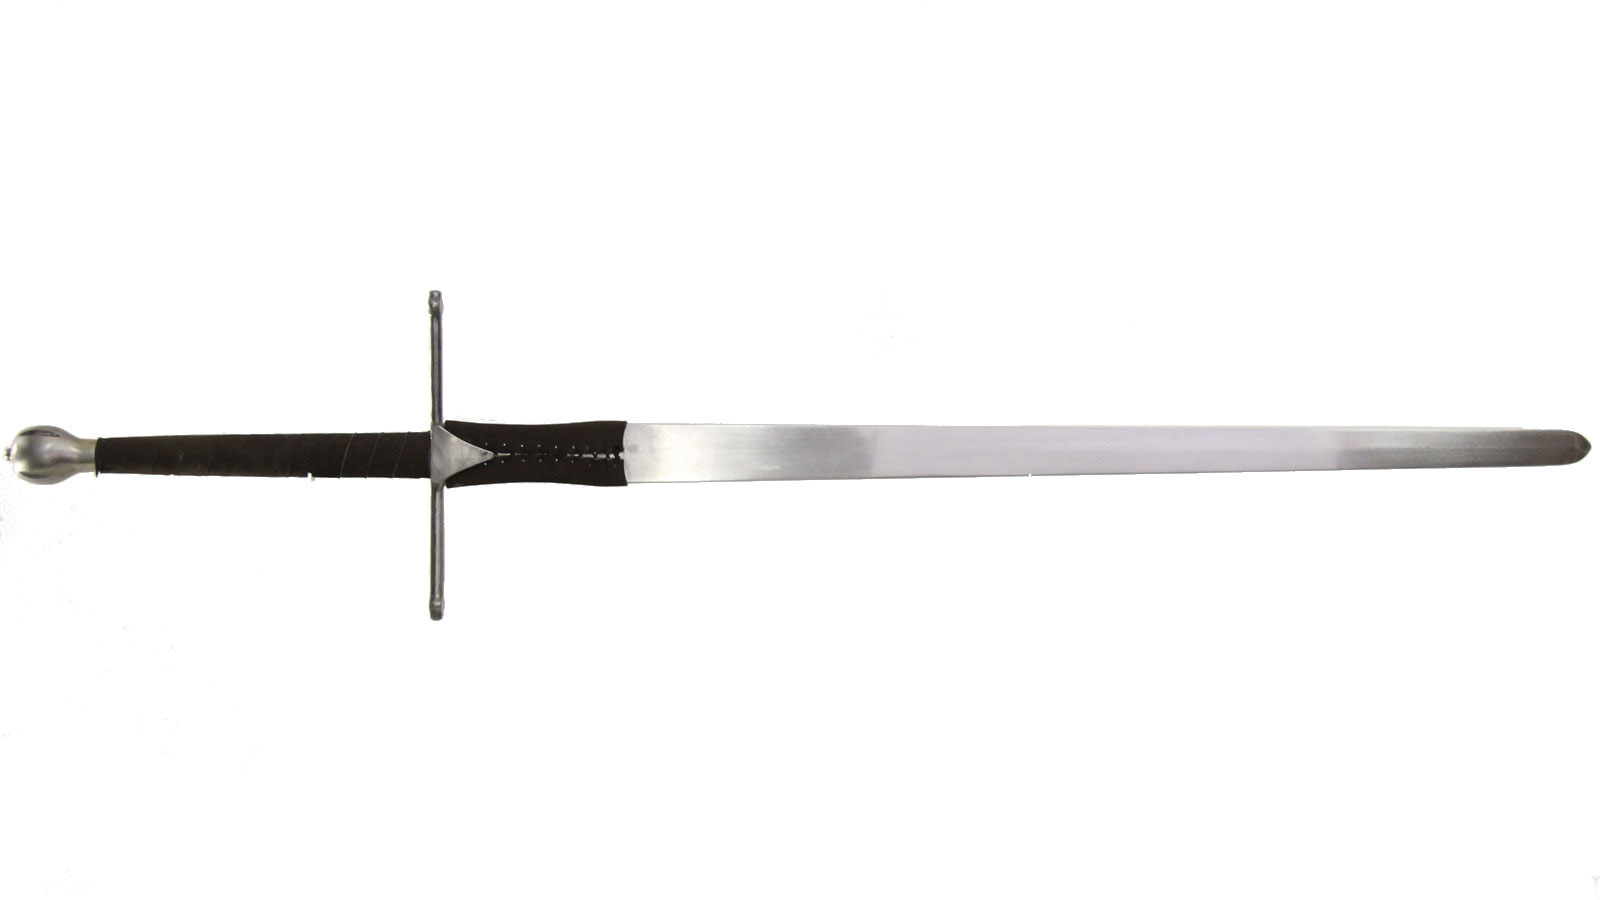 Braveheart Sword